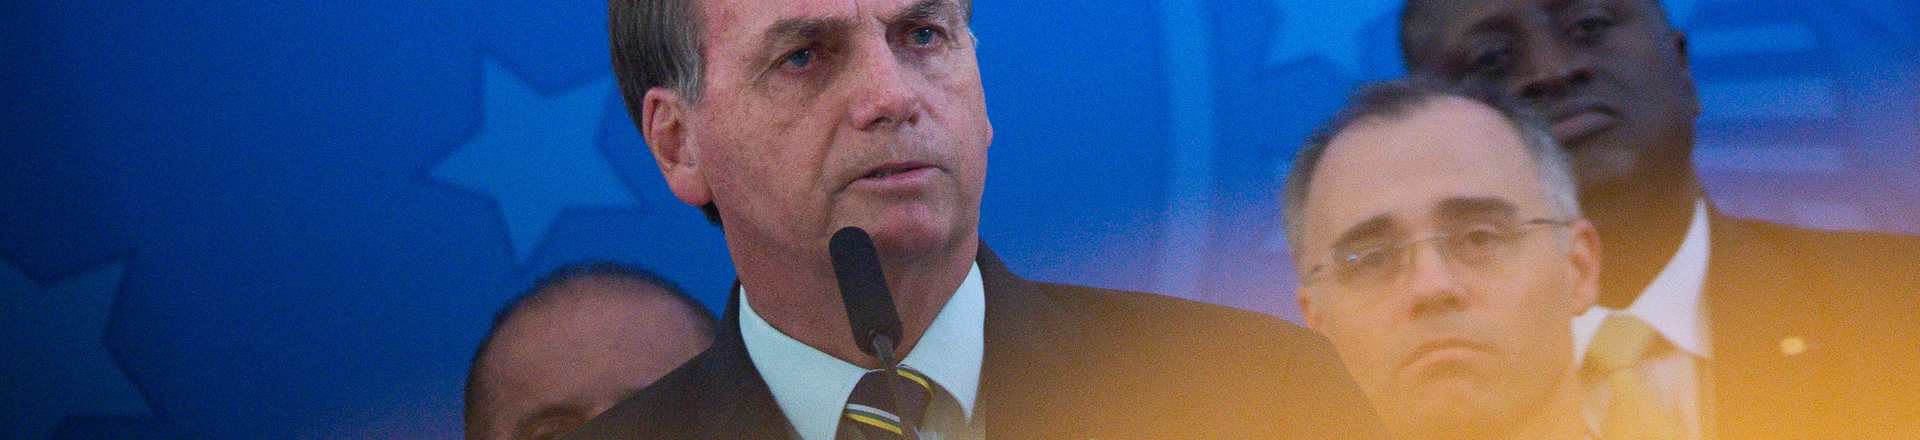 Com canetada escondida, Bolsonaro asfixia Lei de Proteção de Dados em meio à pandemia